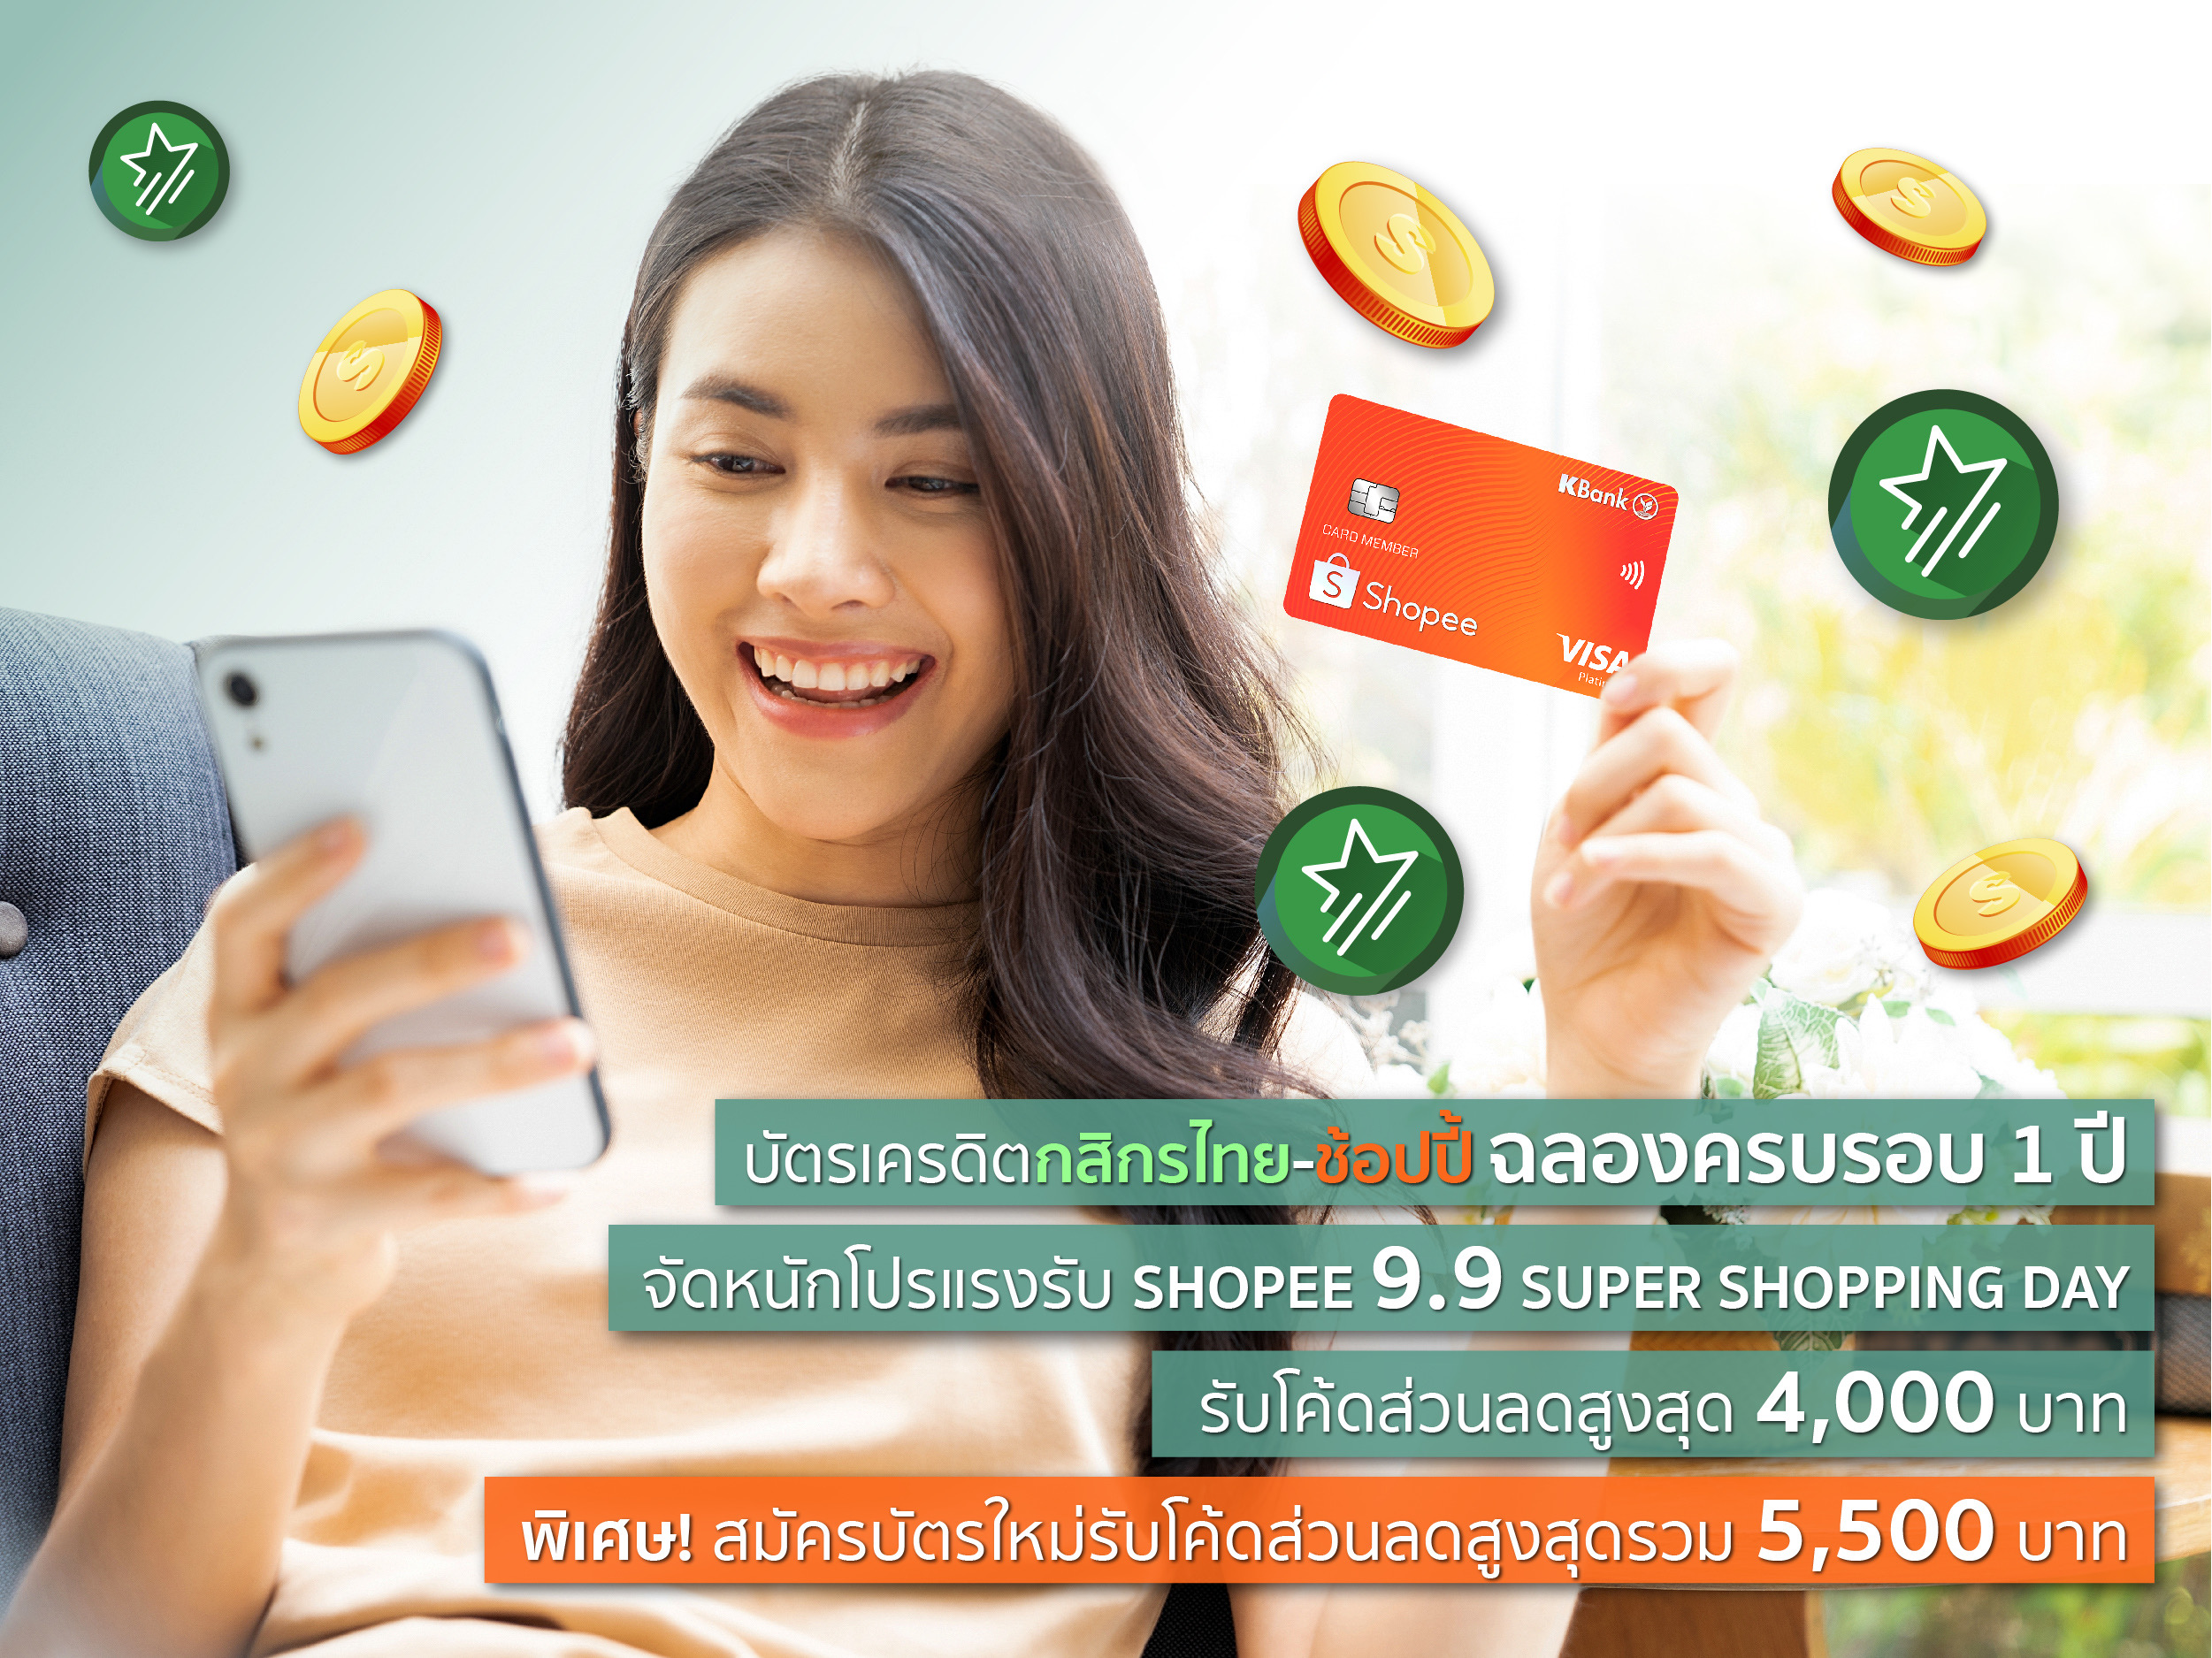 บัตรเครดิตกสิกรไทย-ช้อปปี้ ฉลองครบรอบ 1 ปี